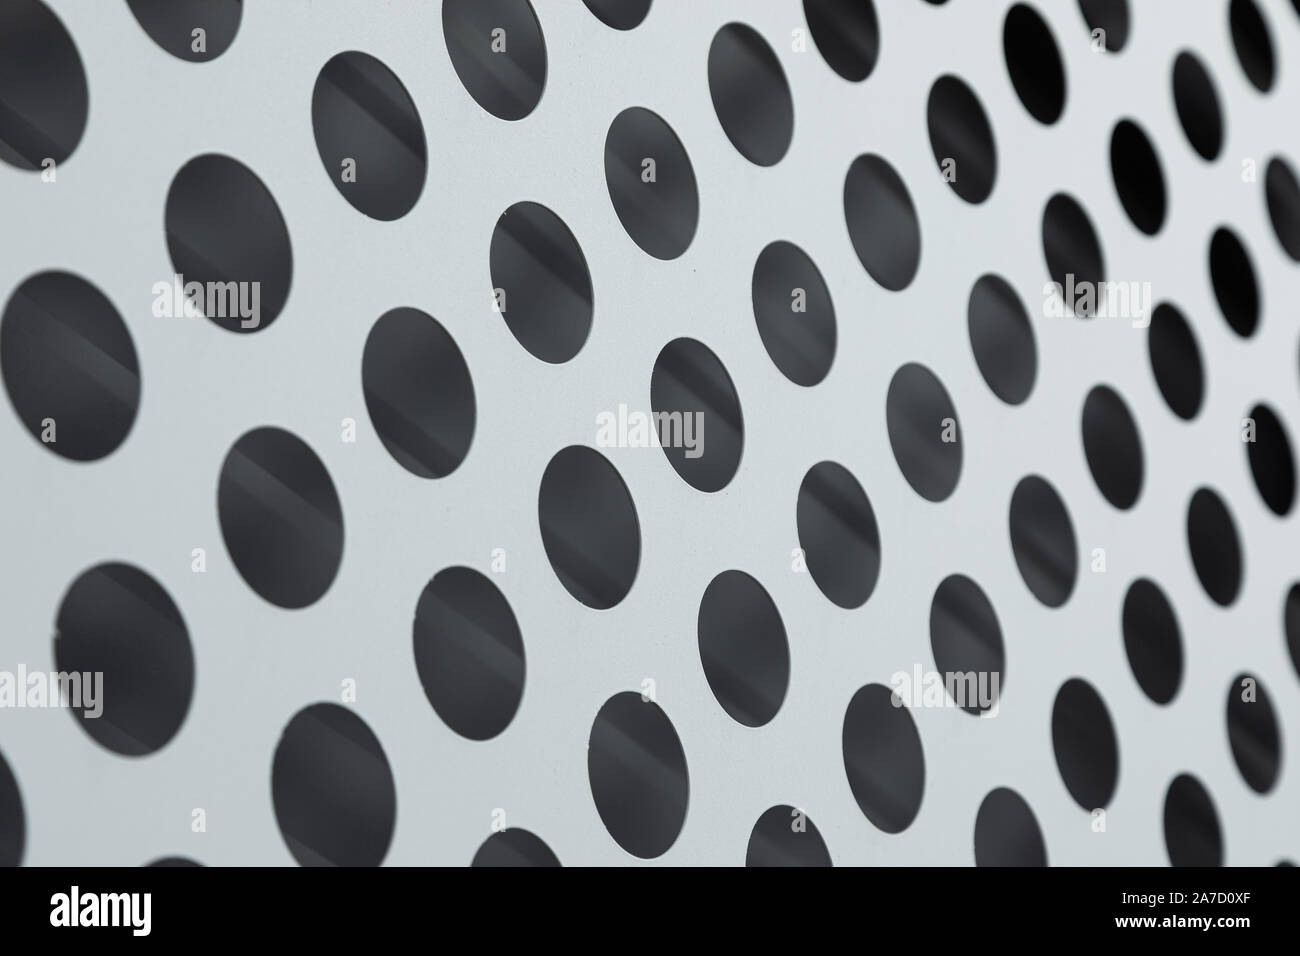 Vue angulaire de la surface en pointillé noir et blanc Banque D'Images